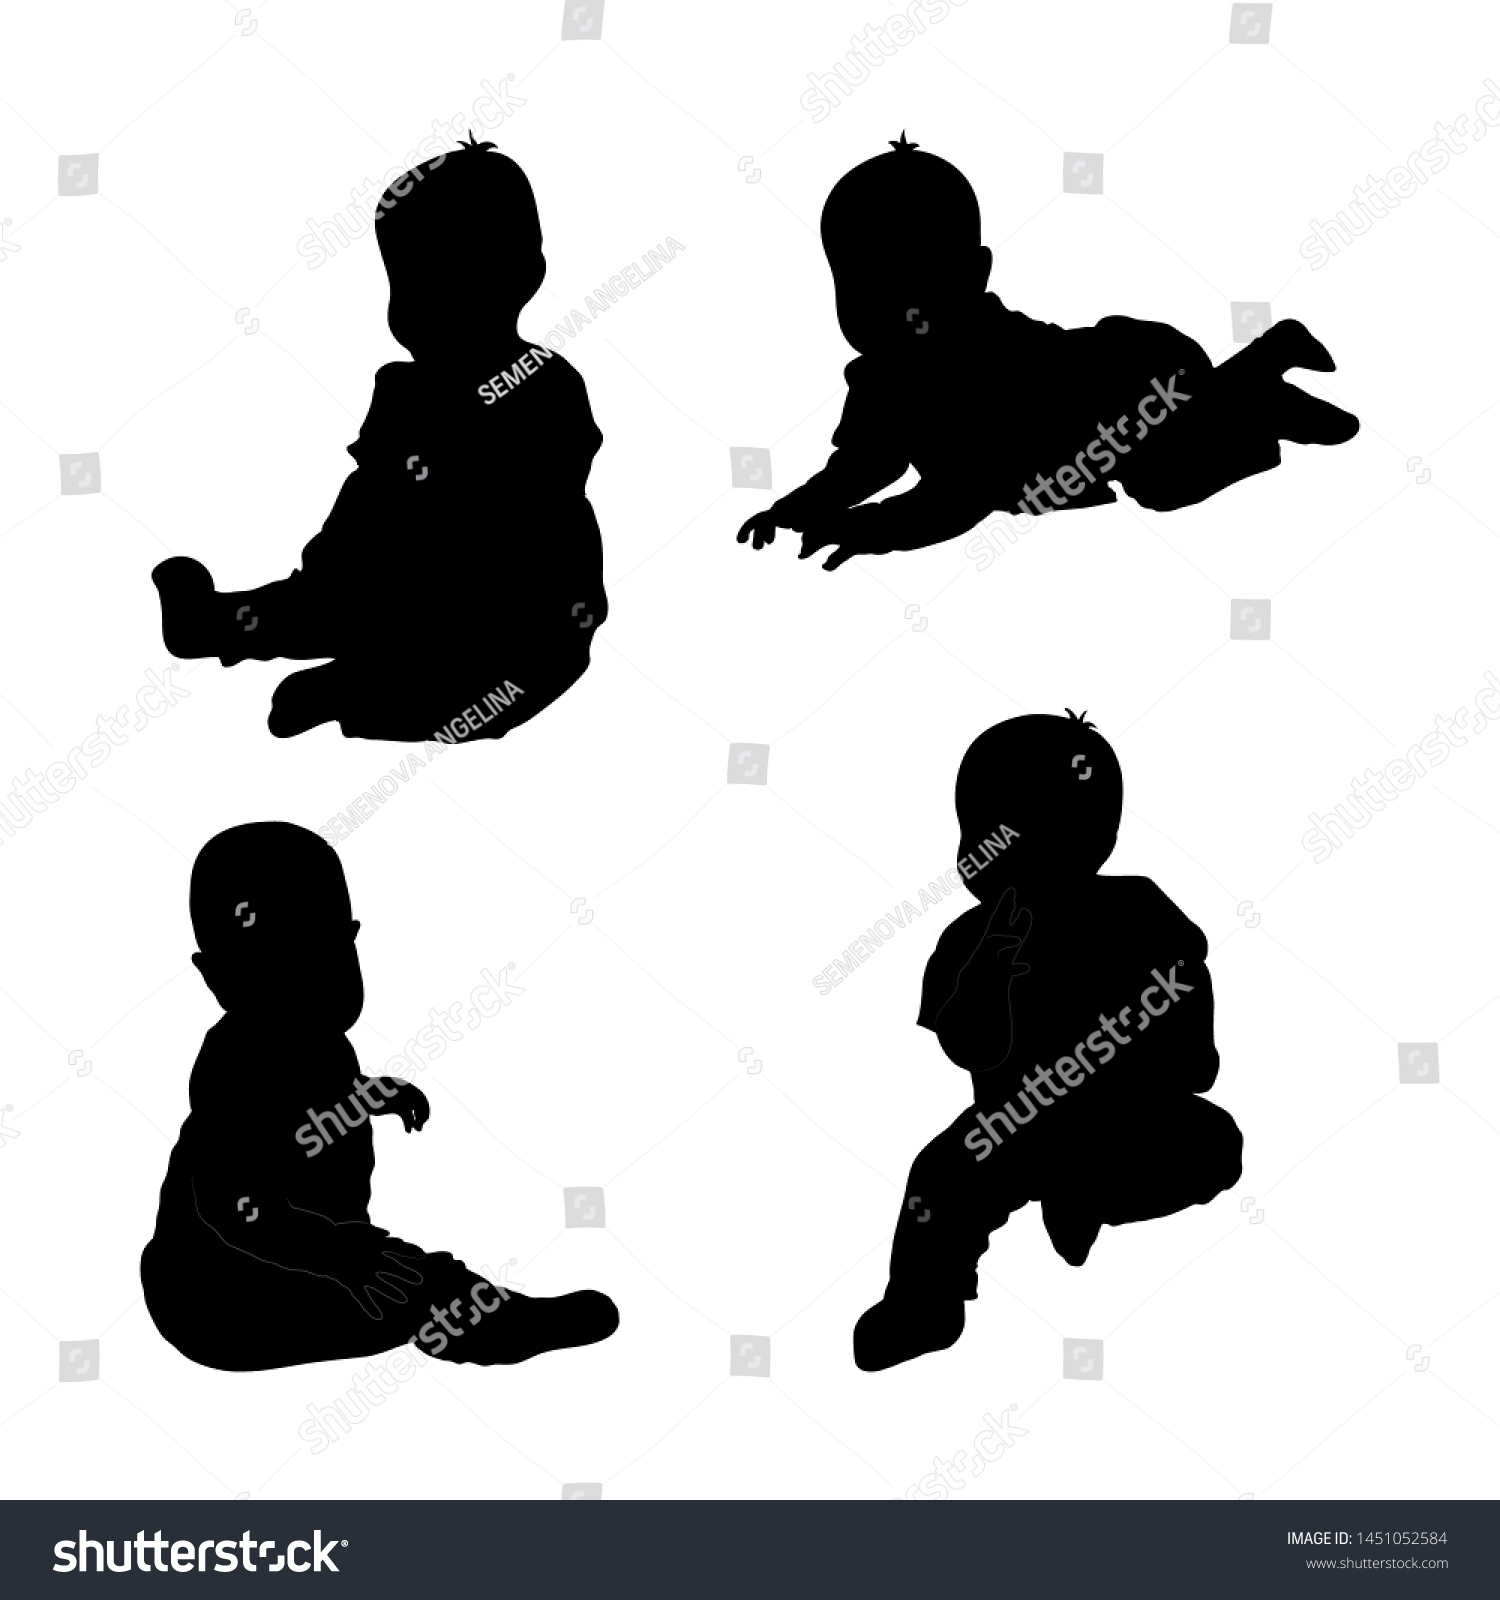 Ensemble De Silhouette Noire D Enfant Bebe Image Vectorielle De Stock Libre De Droits